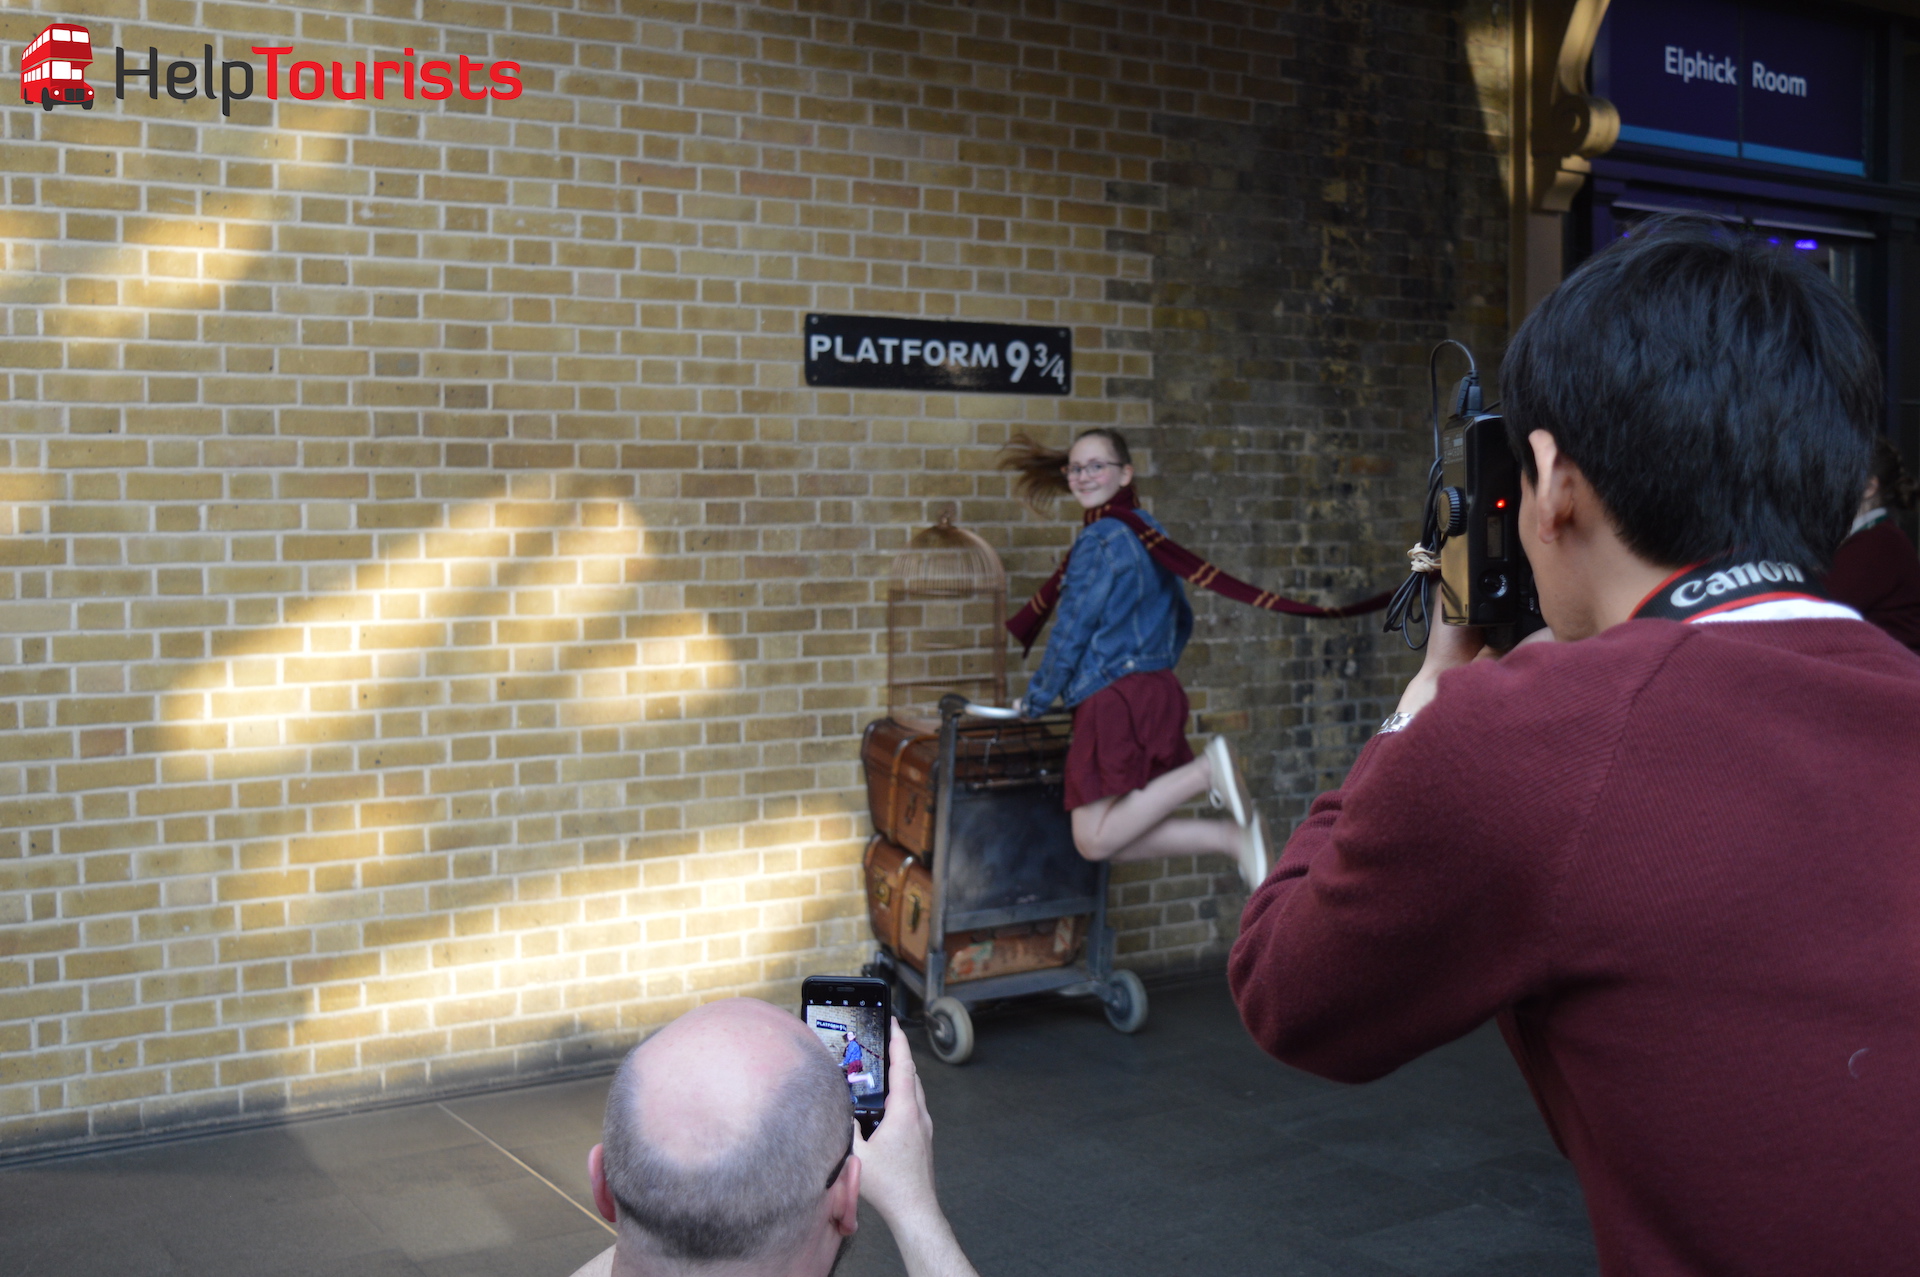 Gleis 9 3:4 Bahnhof King's Cross Harry Potter London